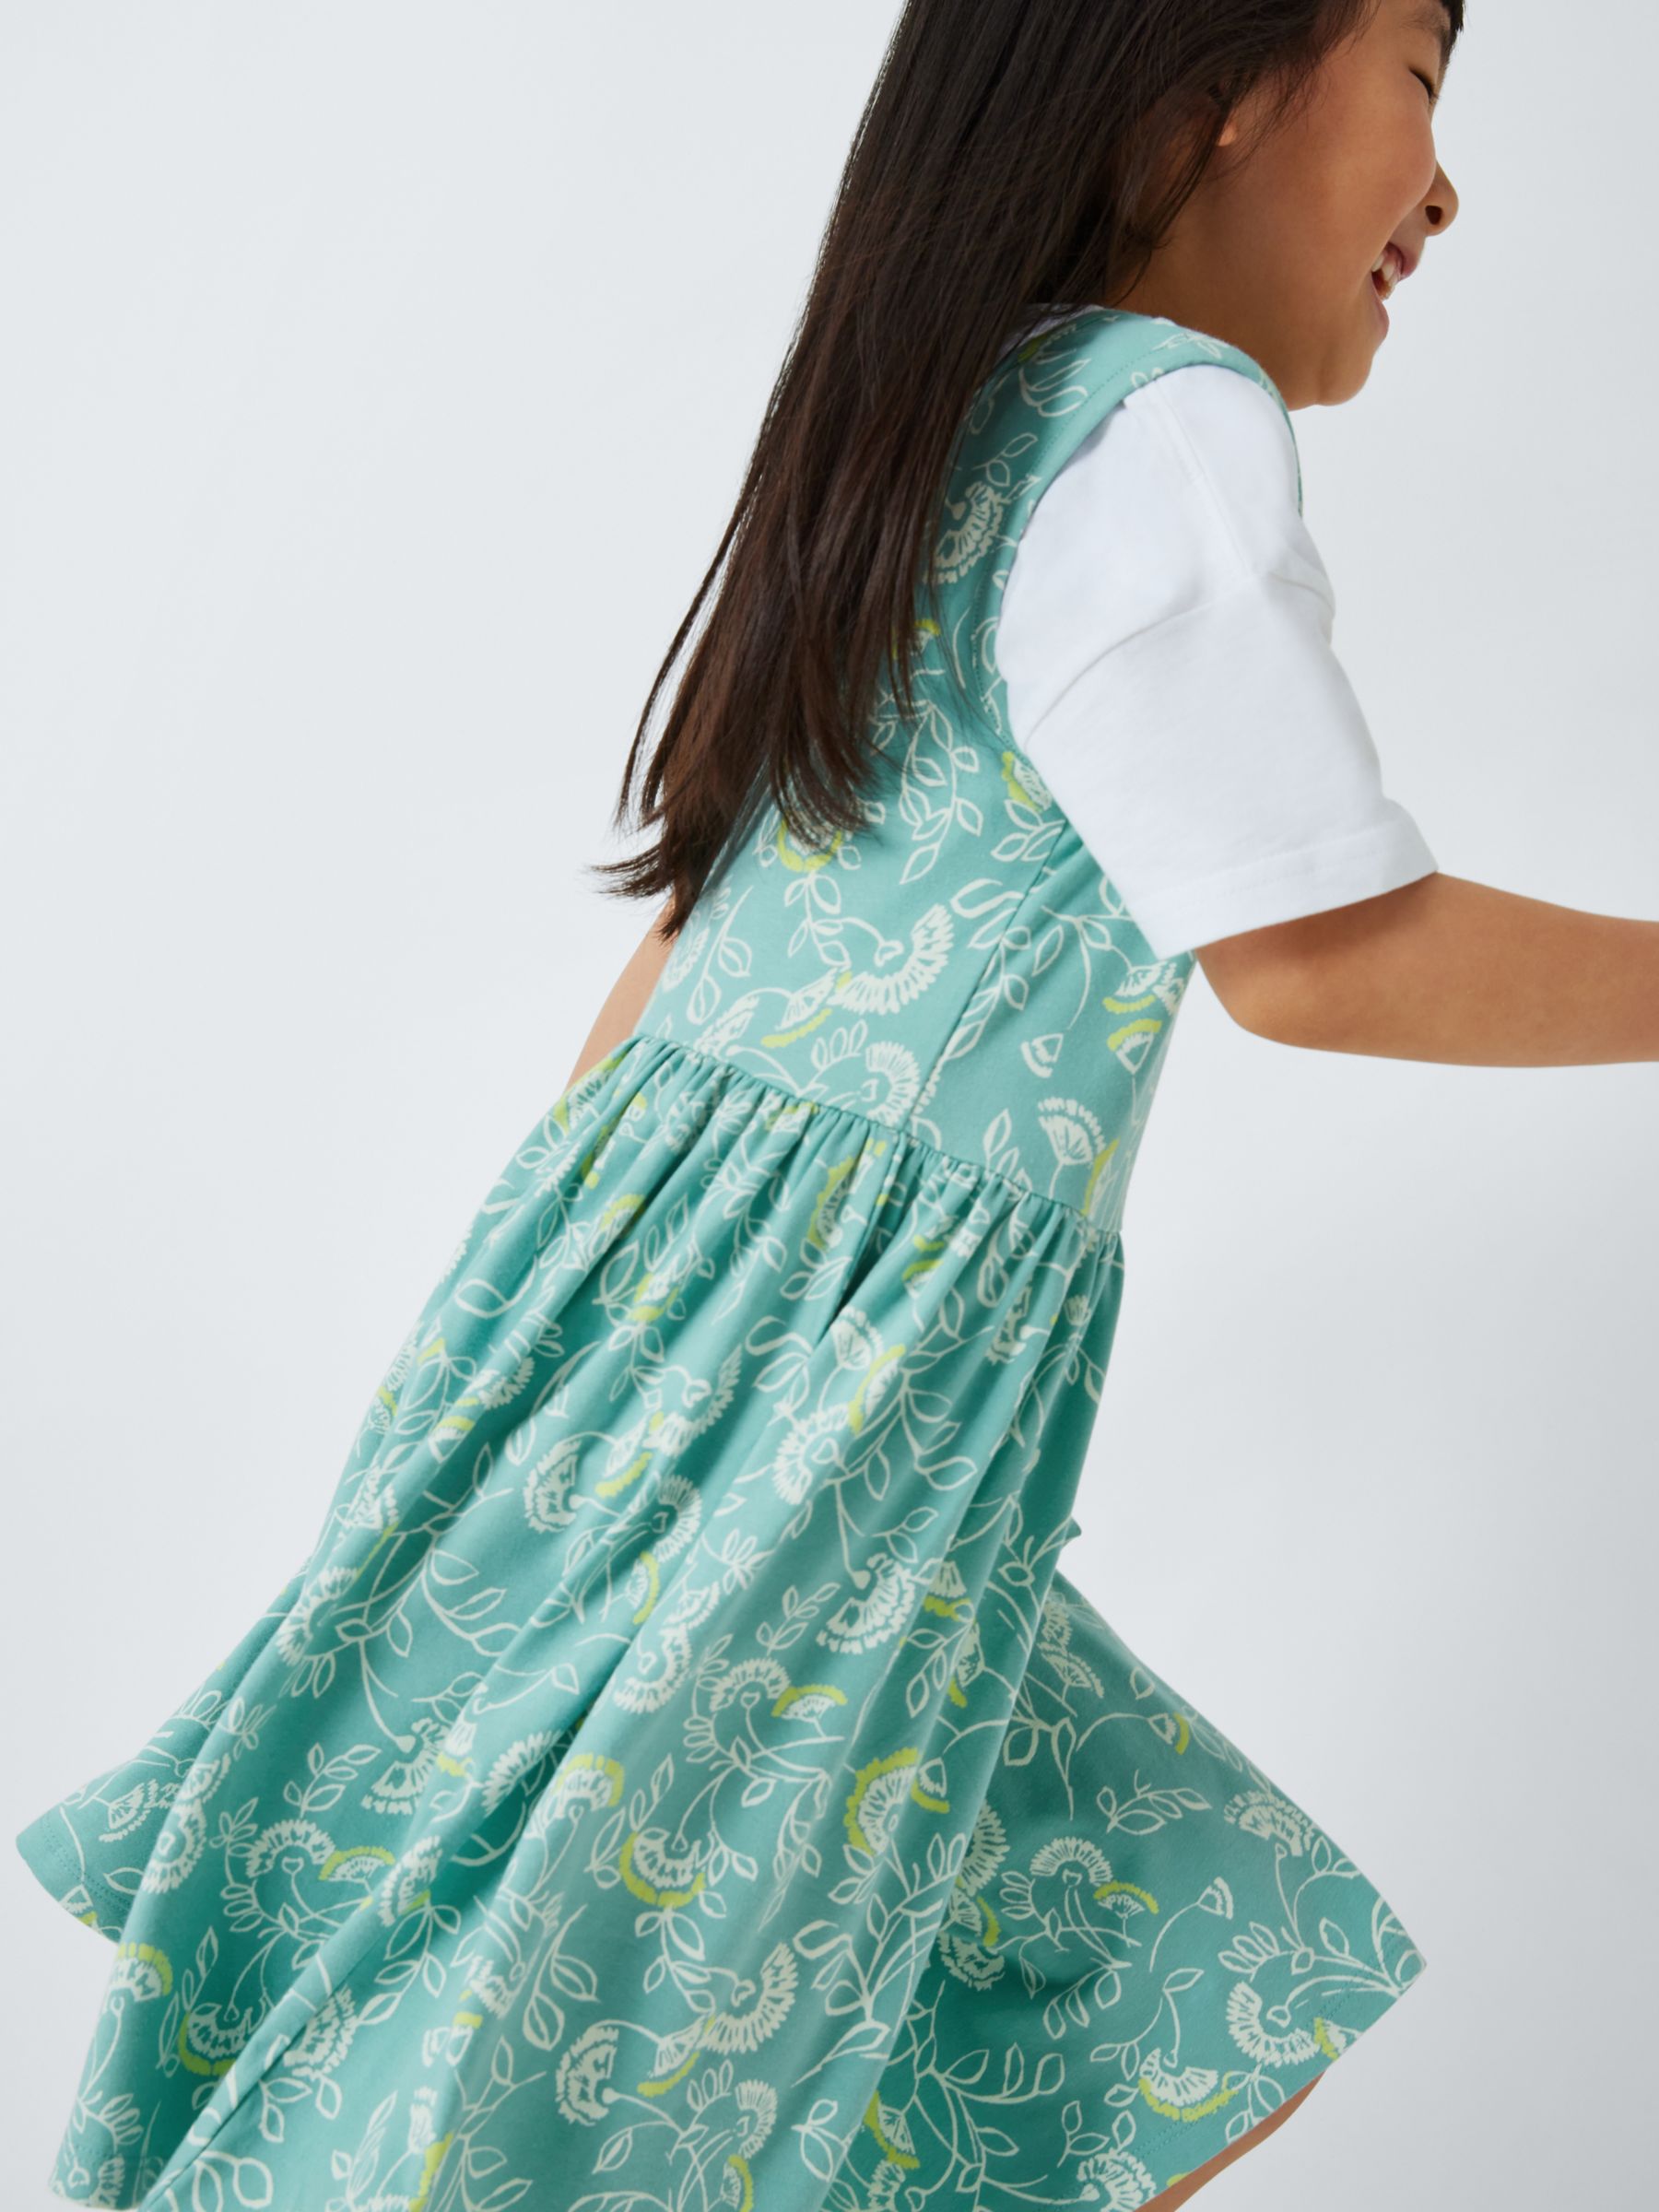 Buy John Lewis Kids' Dandelion Floral Sleeveless Smock Dress, Light Blue Online at johnlewis.com